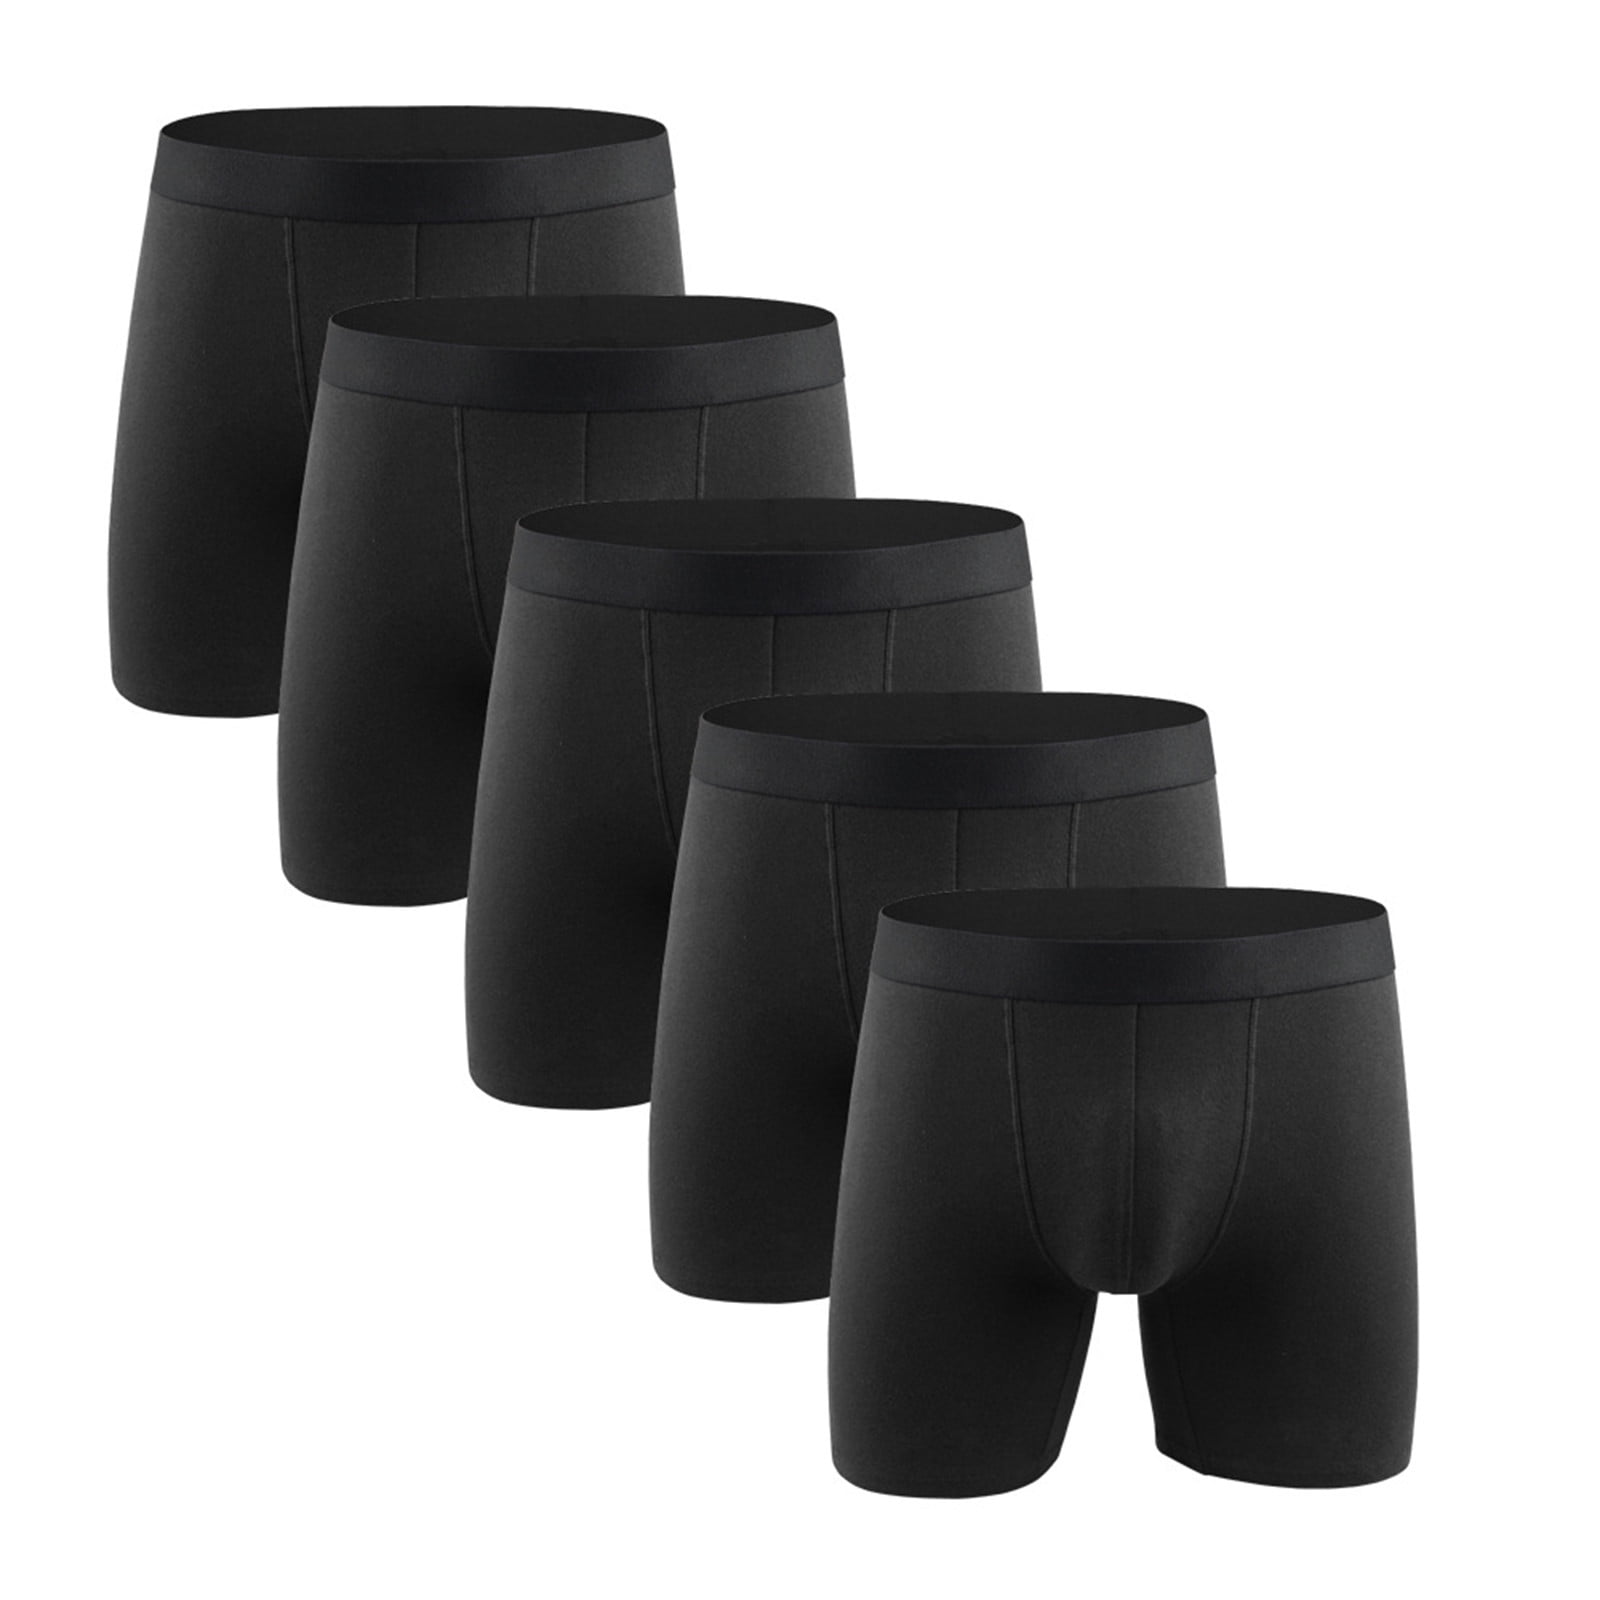 Men's Boxer Briefs Mid Waist Anti-Chafing Moisture-Wicking Underwear ...